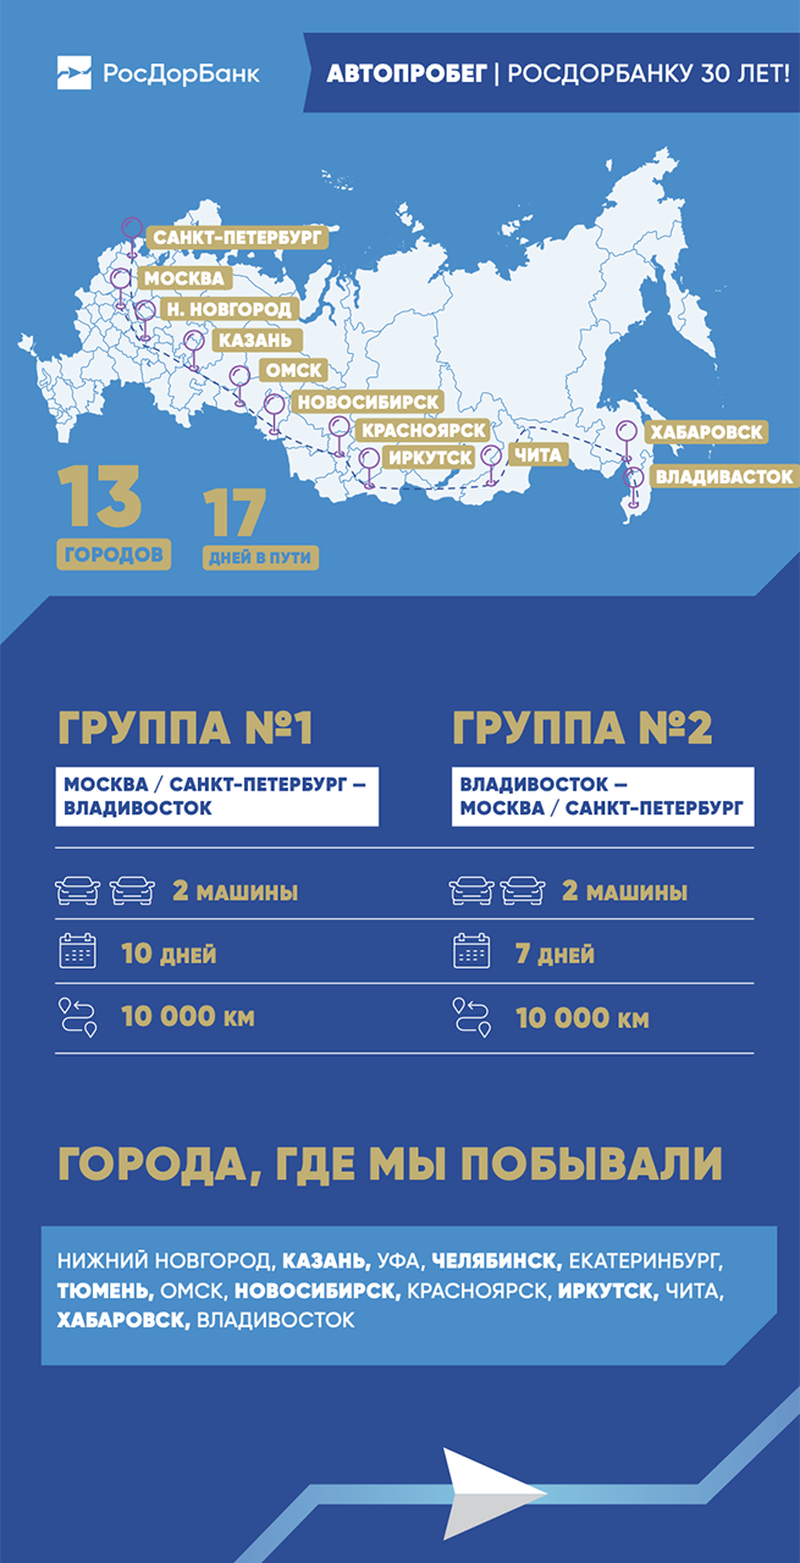 Автопробег Москва — Владивосток — Москва: 20 000 км пути за 17 дней